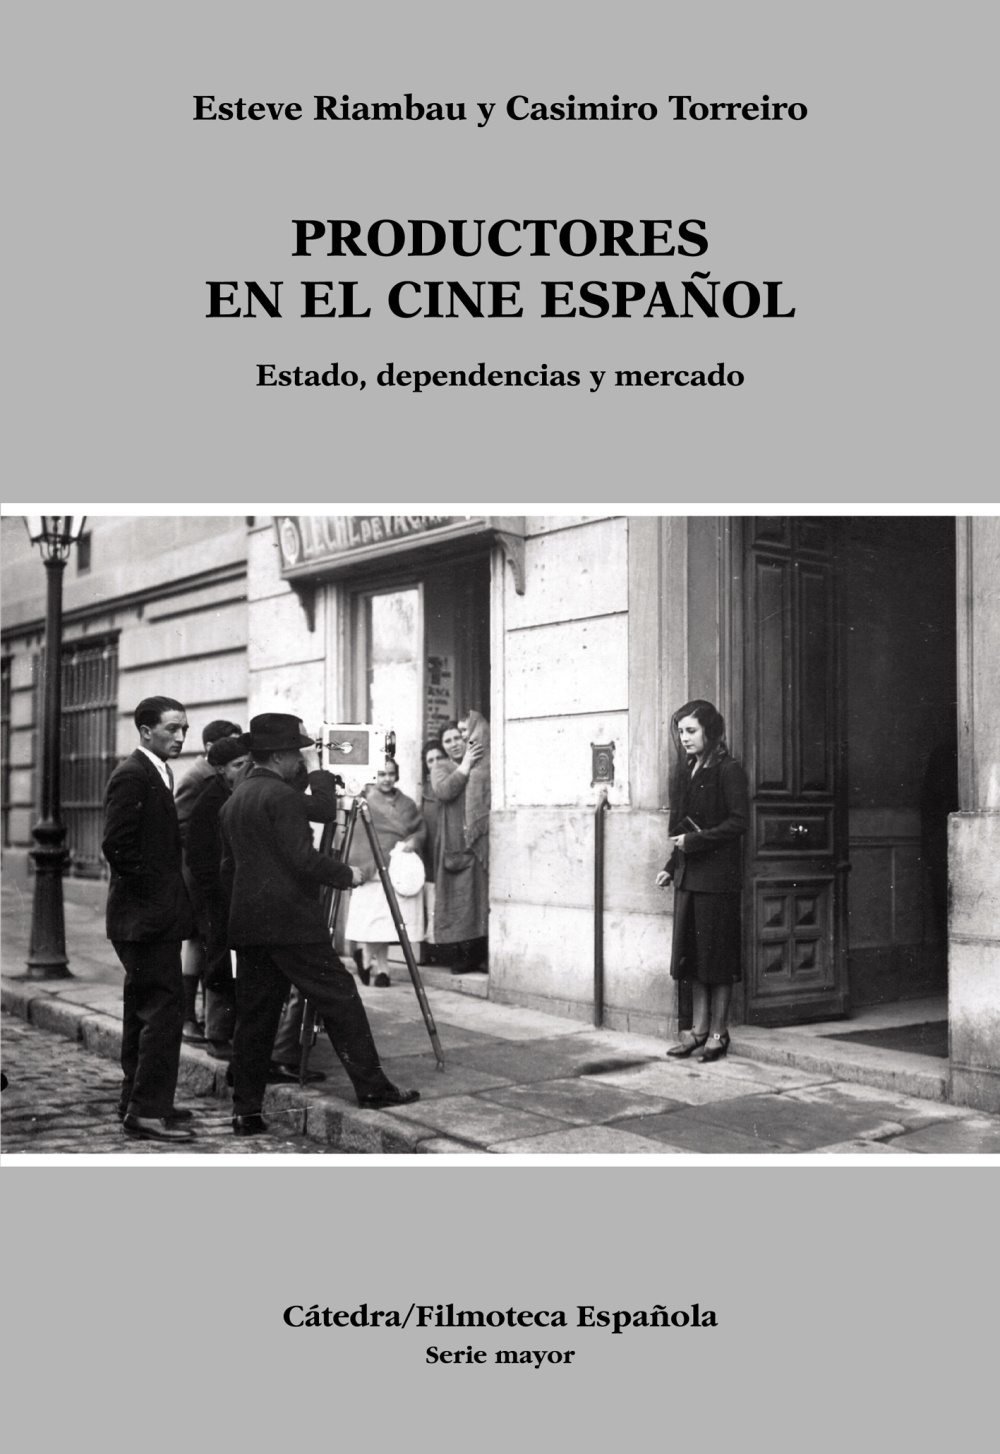 Productores en el cine español